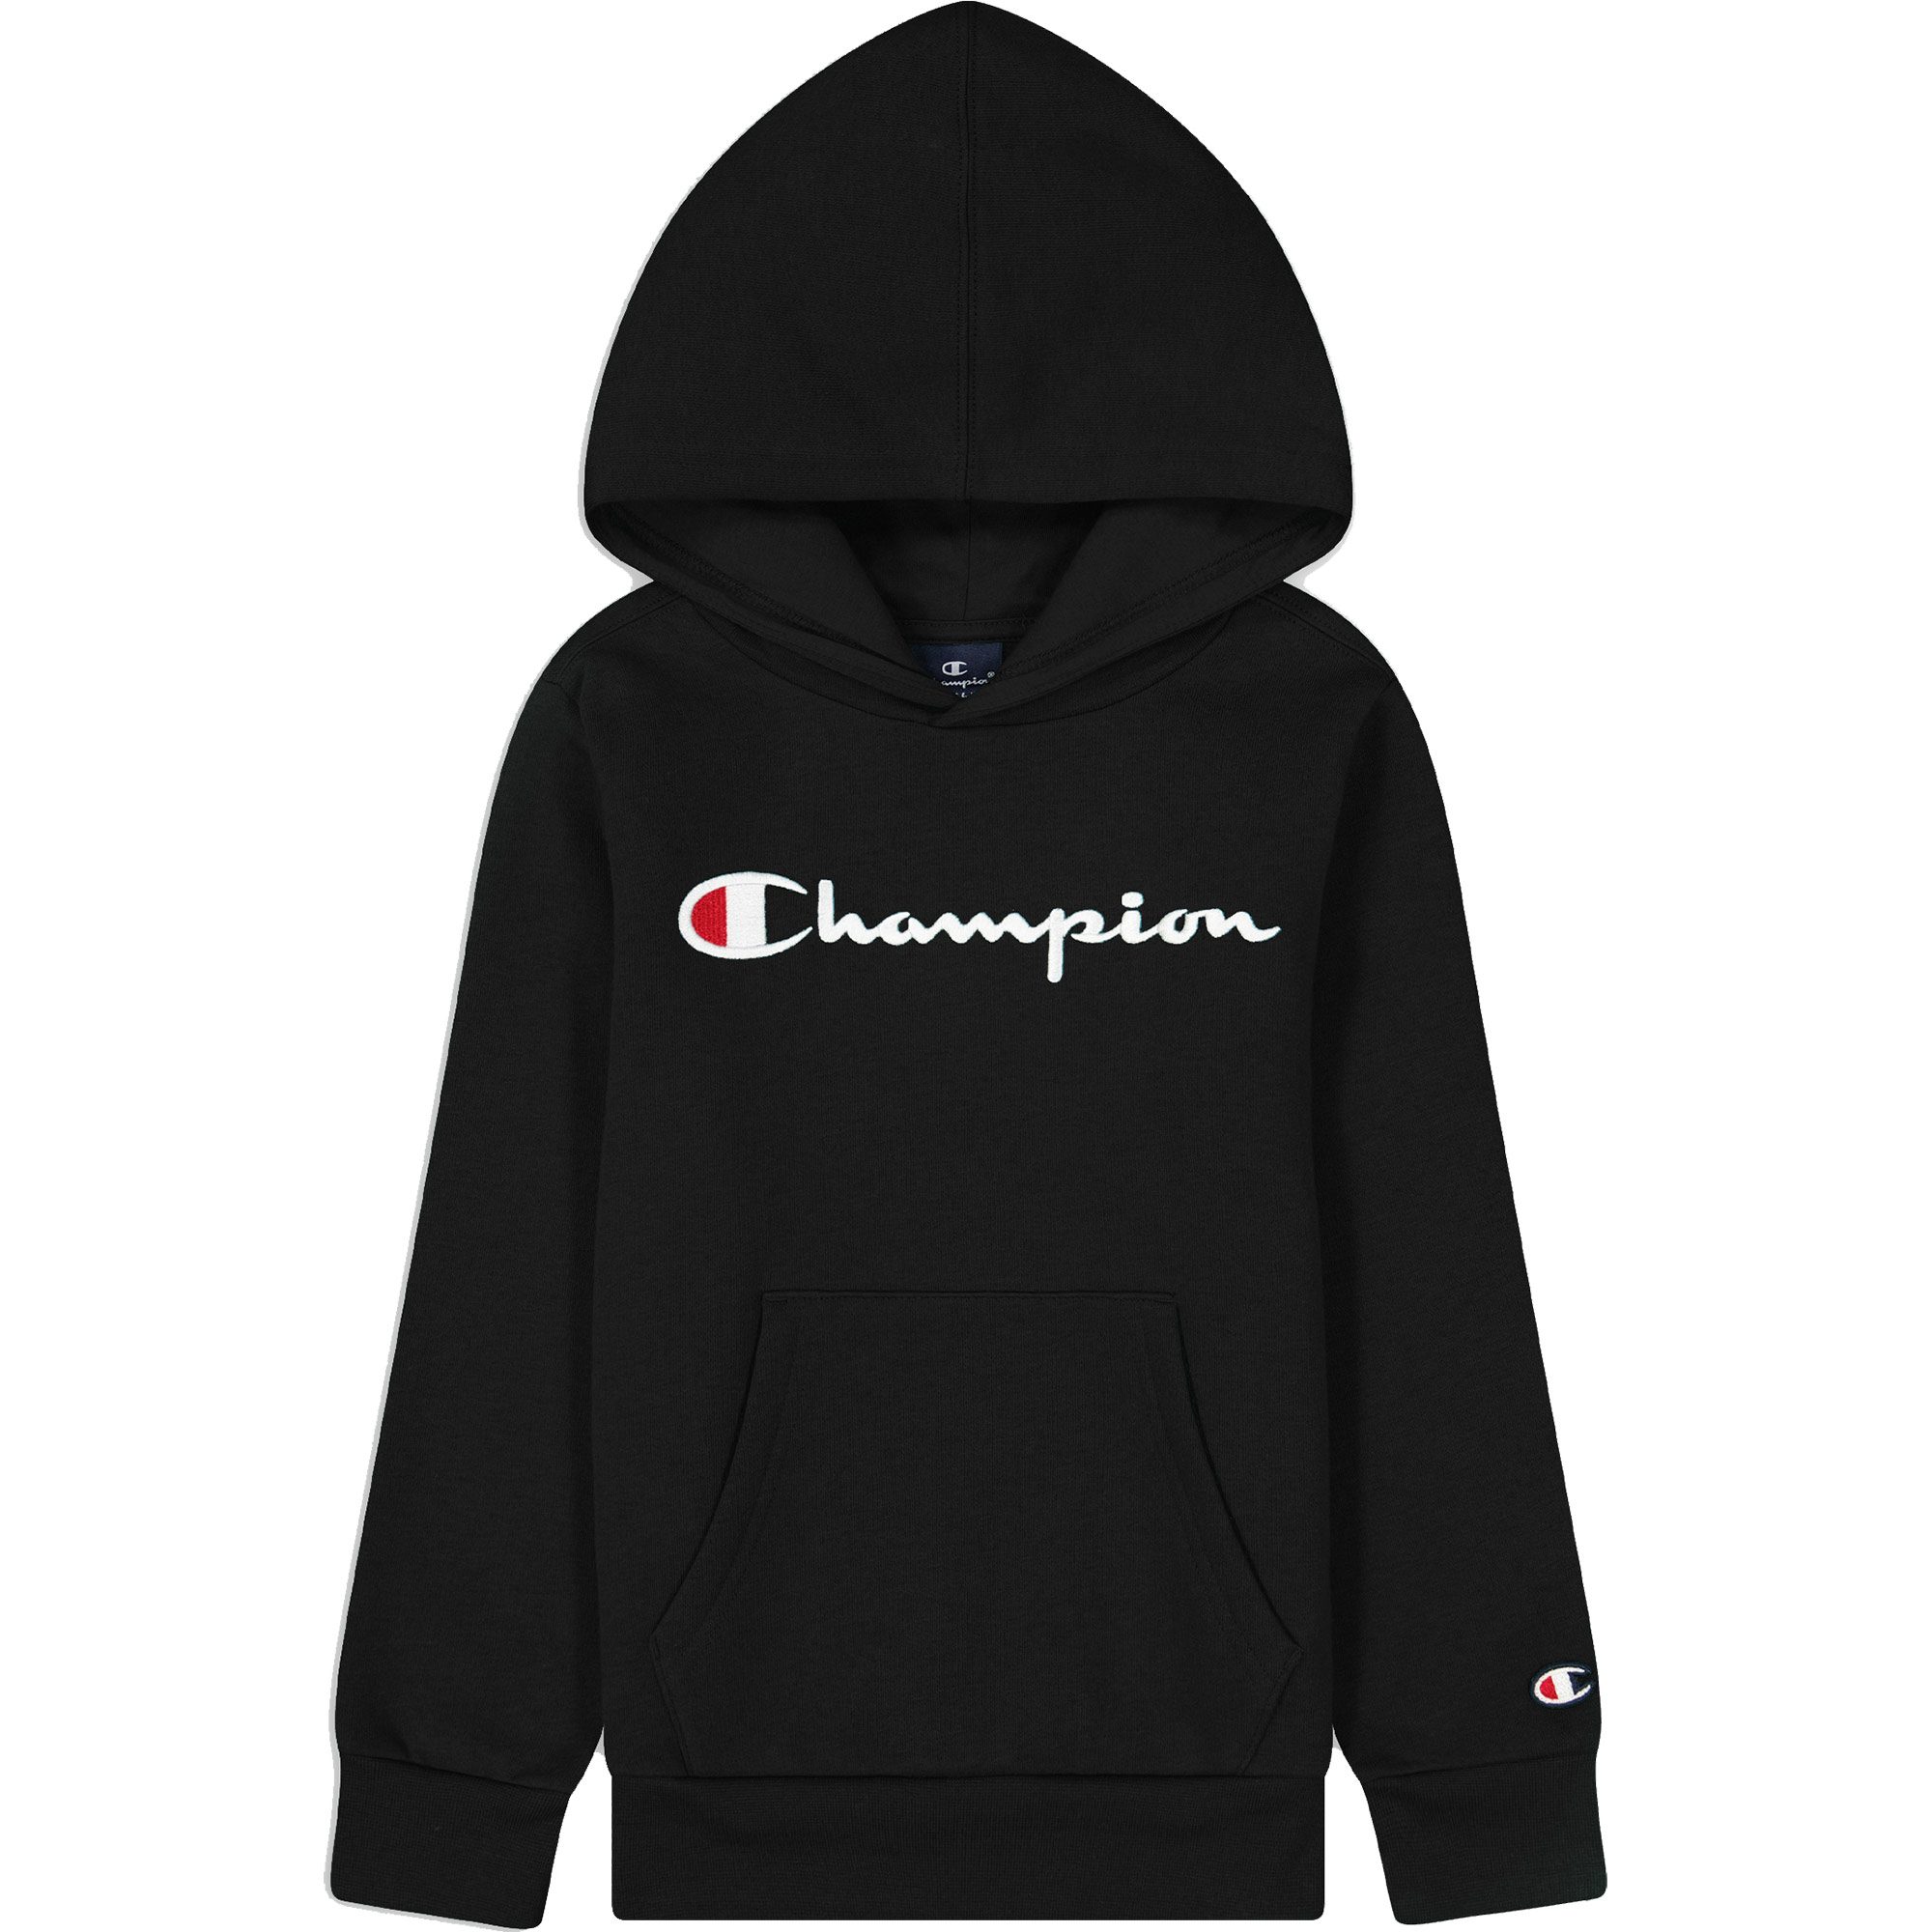 Champion - Hooded Sweatshirt Jungen Sport black kaufen Bittl Shop beauty im